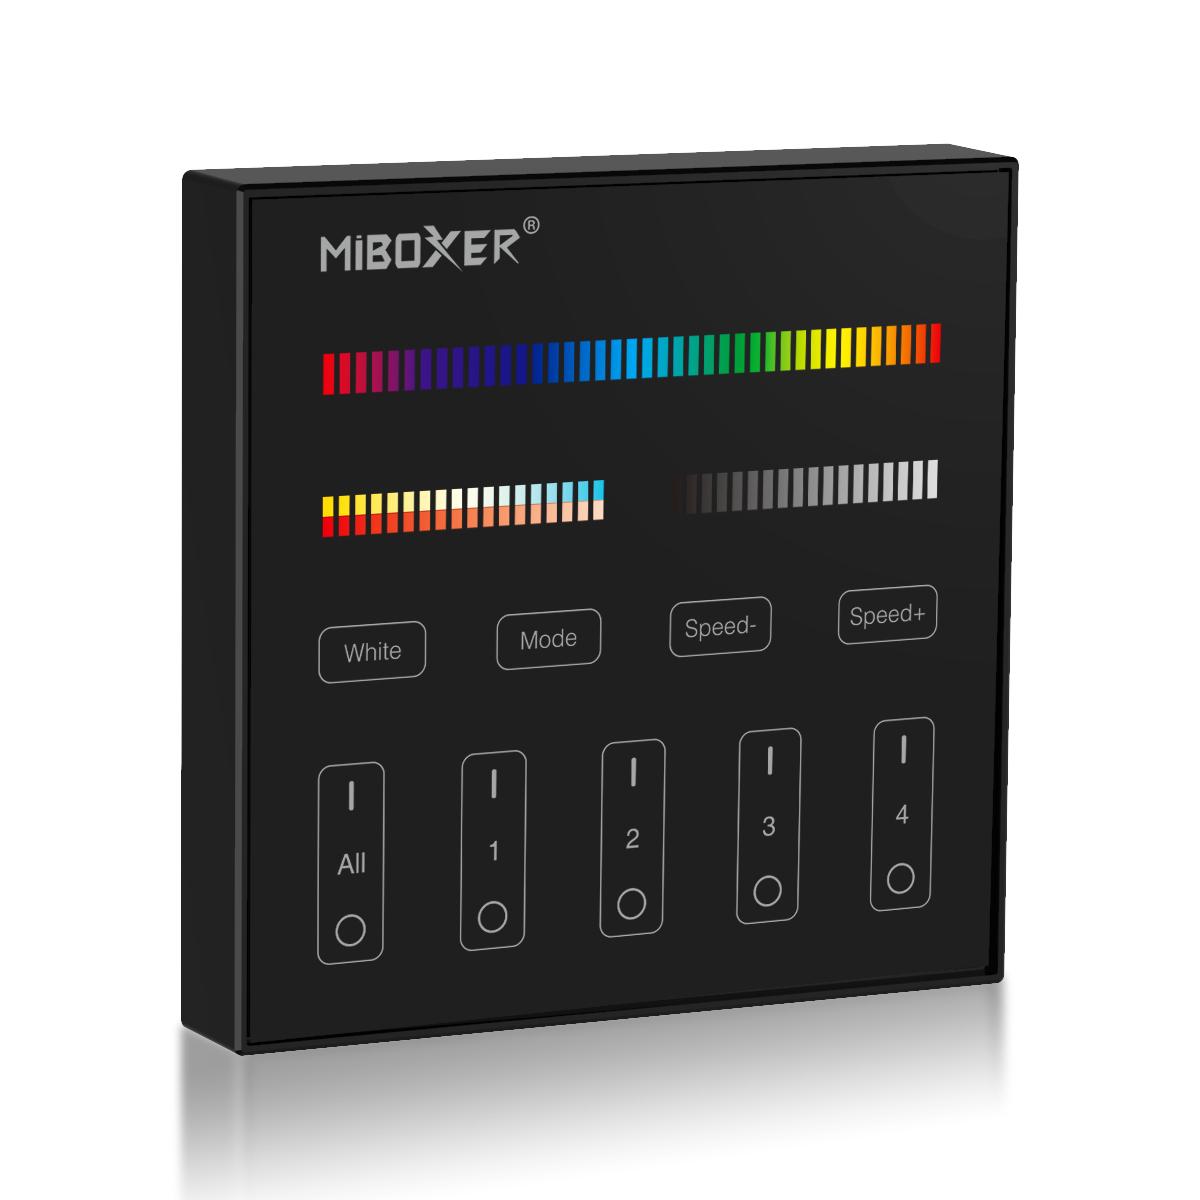 MiBoxer RGB+CCT Wandschalter schwarz 4 Zonen Aufbau Dimmen Schalten Farbsteuerung batteriebetrieben B4-B